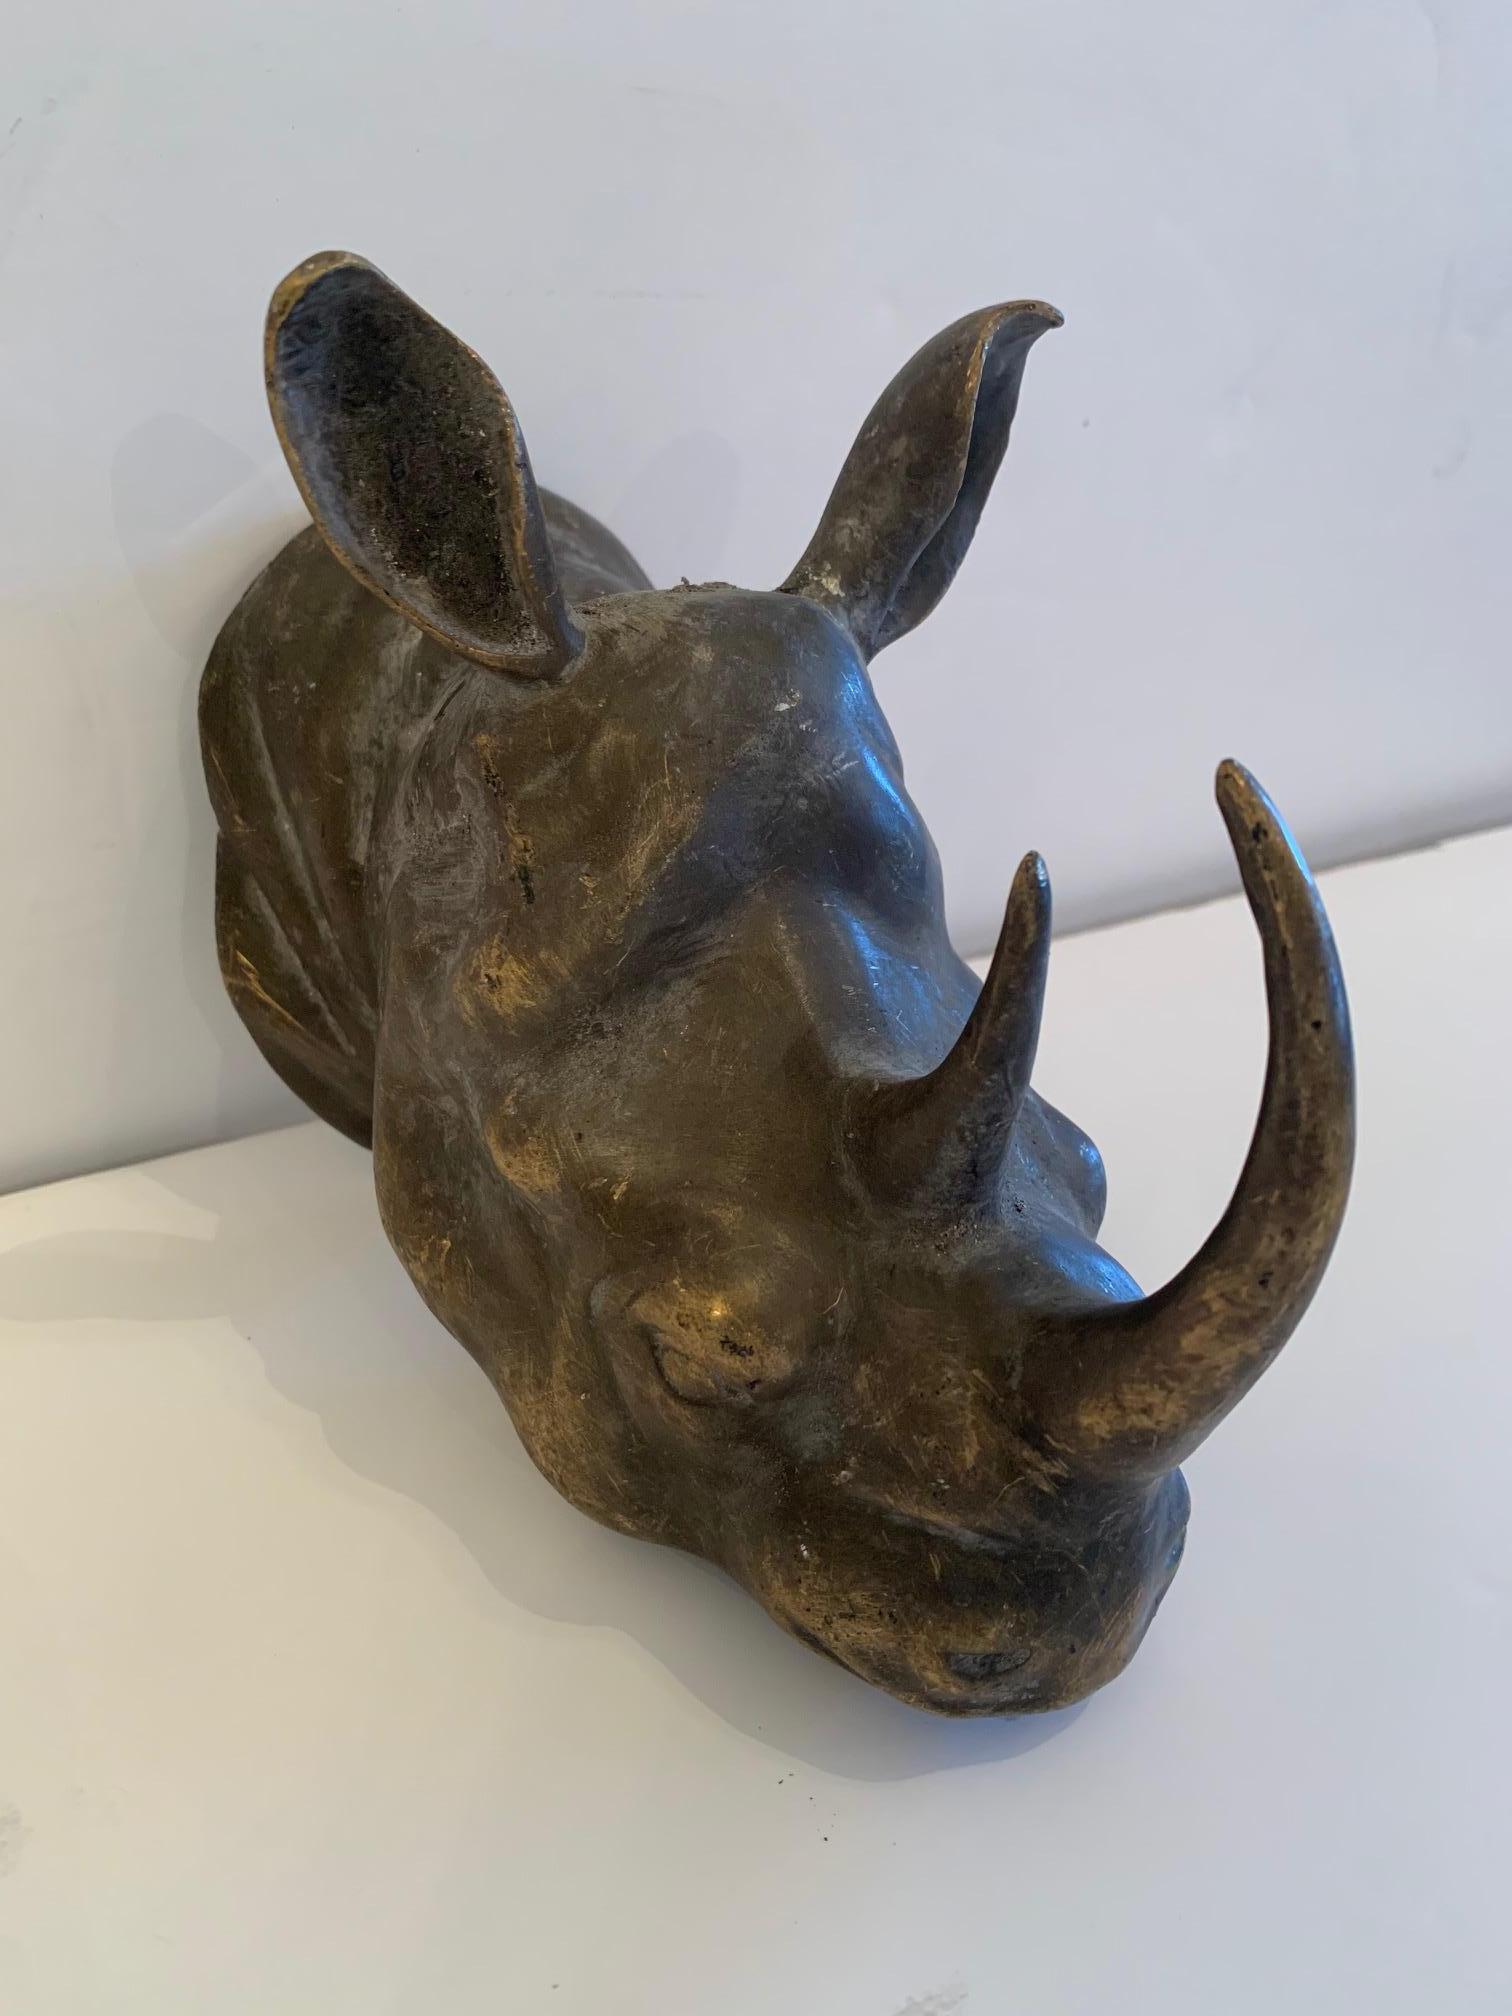 Une merveilleuse petite sculpture murale inattendue en bronze représentant une tête de rhinocéros.